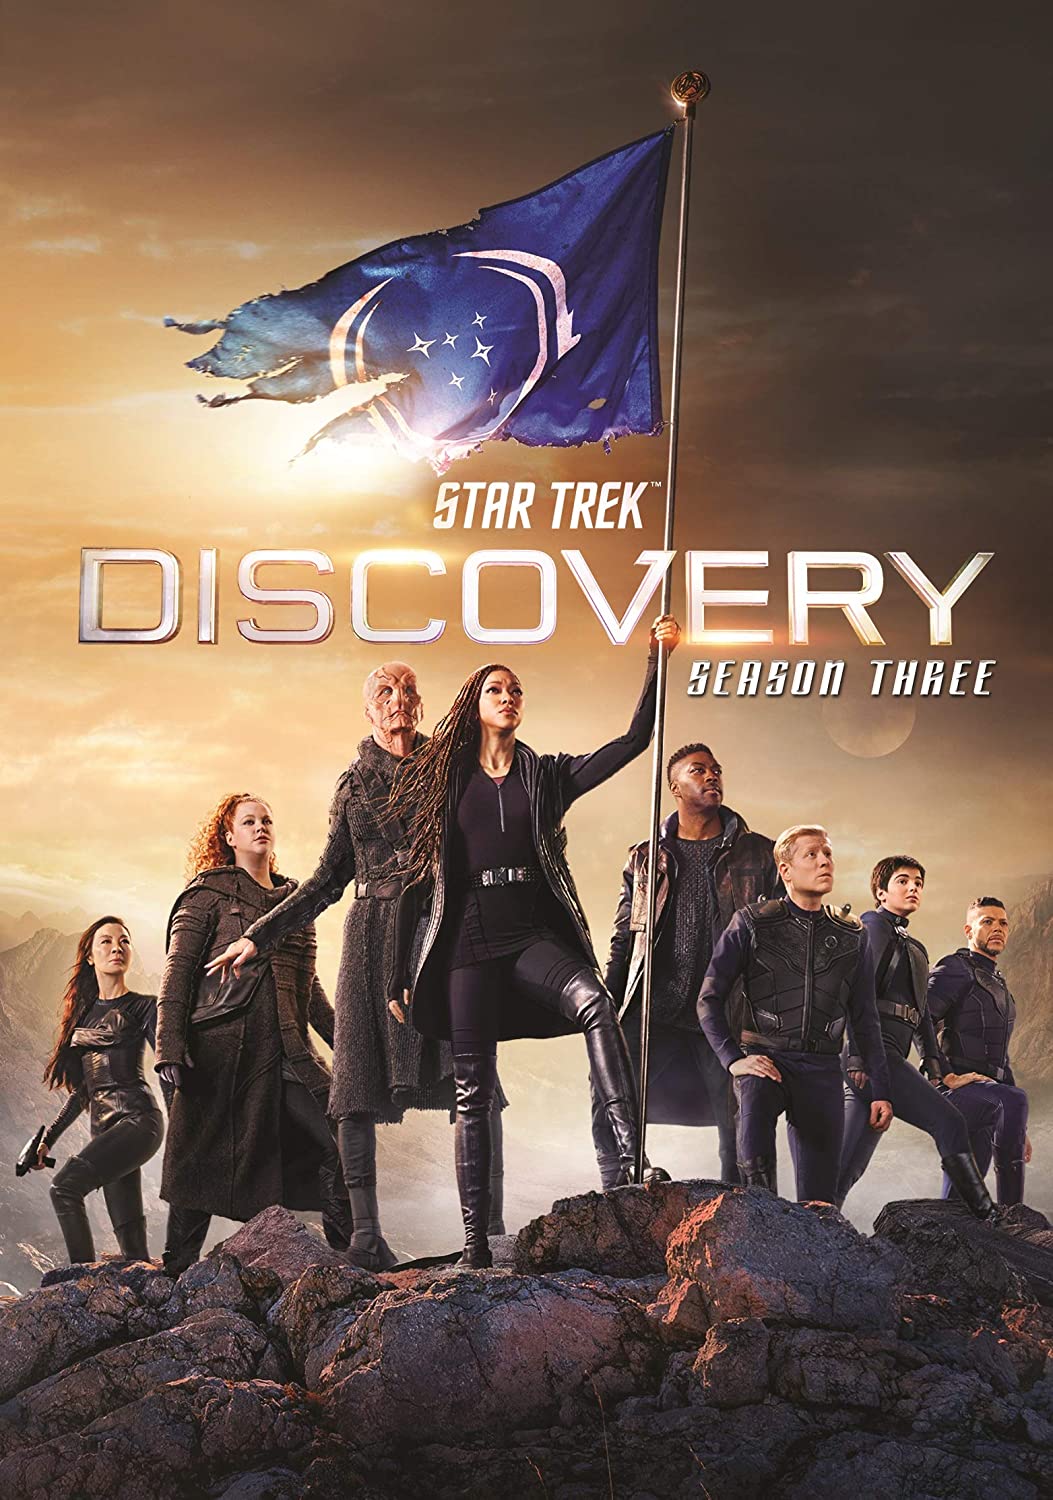 ดูหนังออนไลน์ฟรี Star Trek Discovery Season 3 EP3 สตาร์ เทรค ดิสคัฟเวอรี่ ซีซั่นที่ 3 ตอนที่ 3